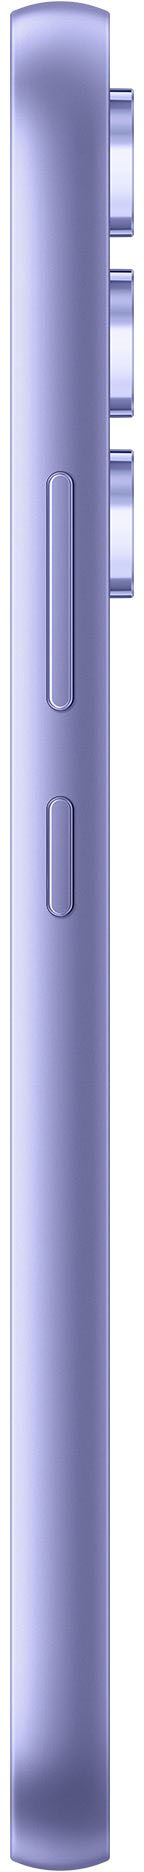 Samsung Galaxy A54 5G (Awesome Violet, 8GB, 256GB Storage) | 50 MP No Sh